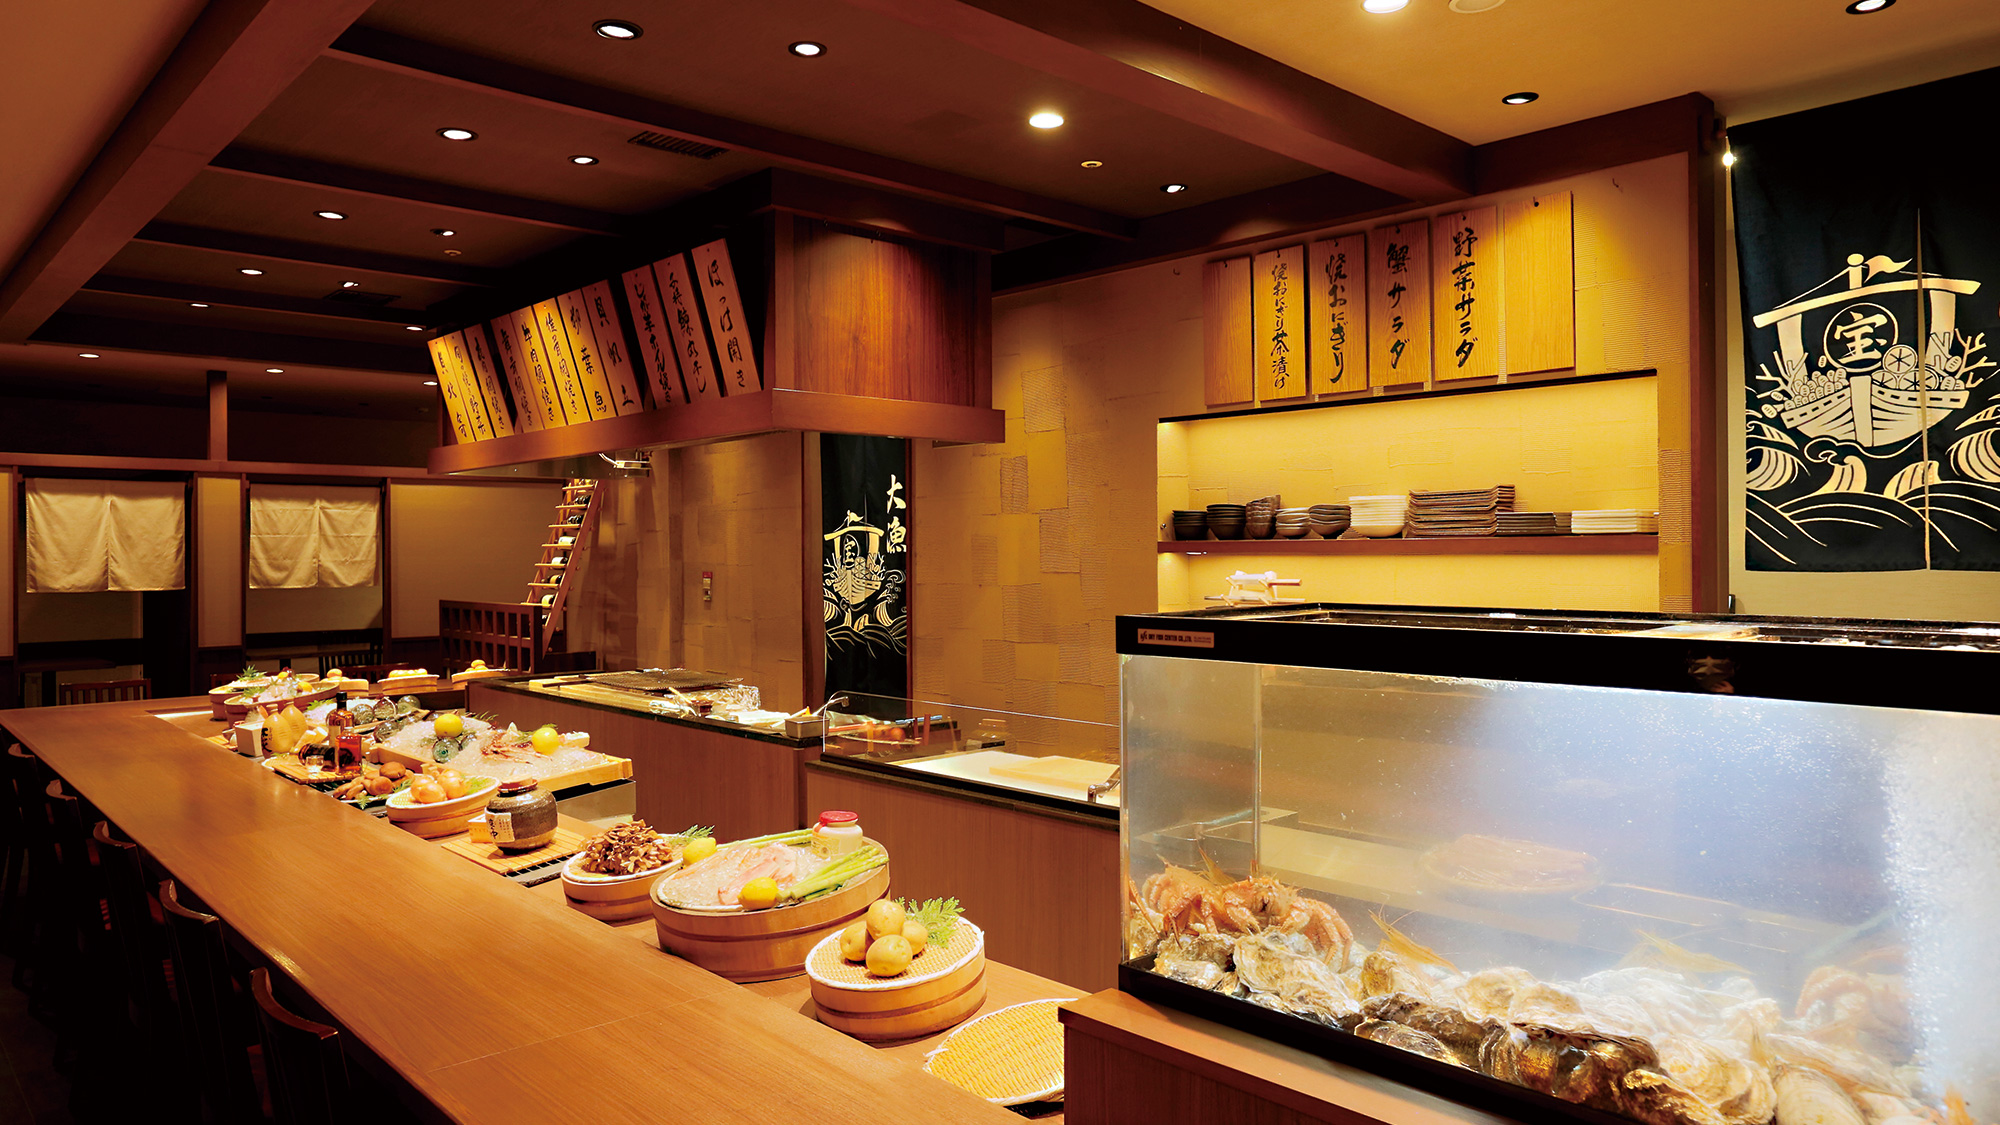 「志古津」店内の水槽には、毛蟹や牡丹海老や雲丹など、旬の食材を通年で取り揃えております。